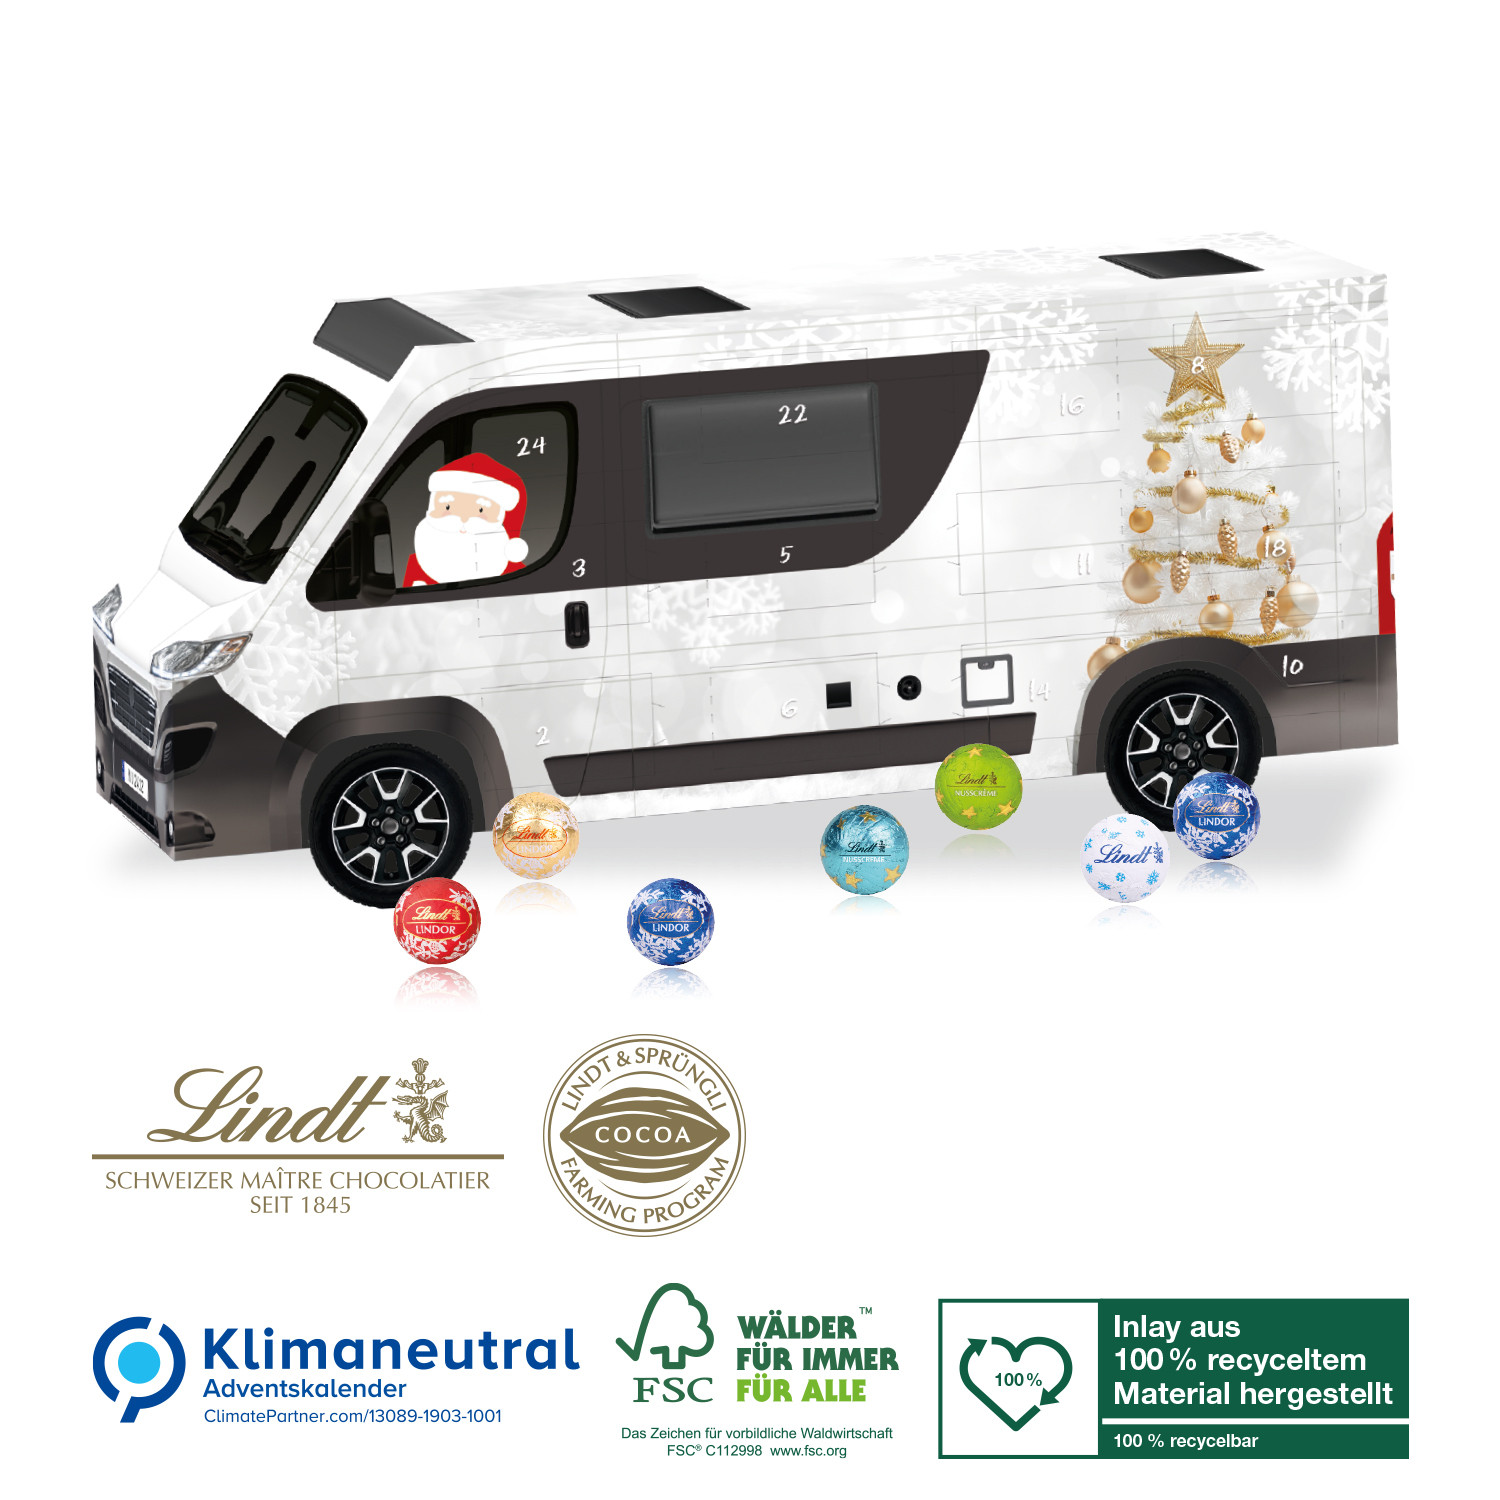 3D Adventskalender Lindt Camper, Klimaneutral, FSC®, Inlay aus 100% recyceltem Material